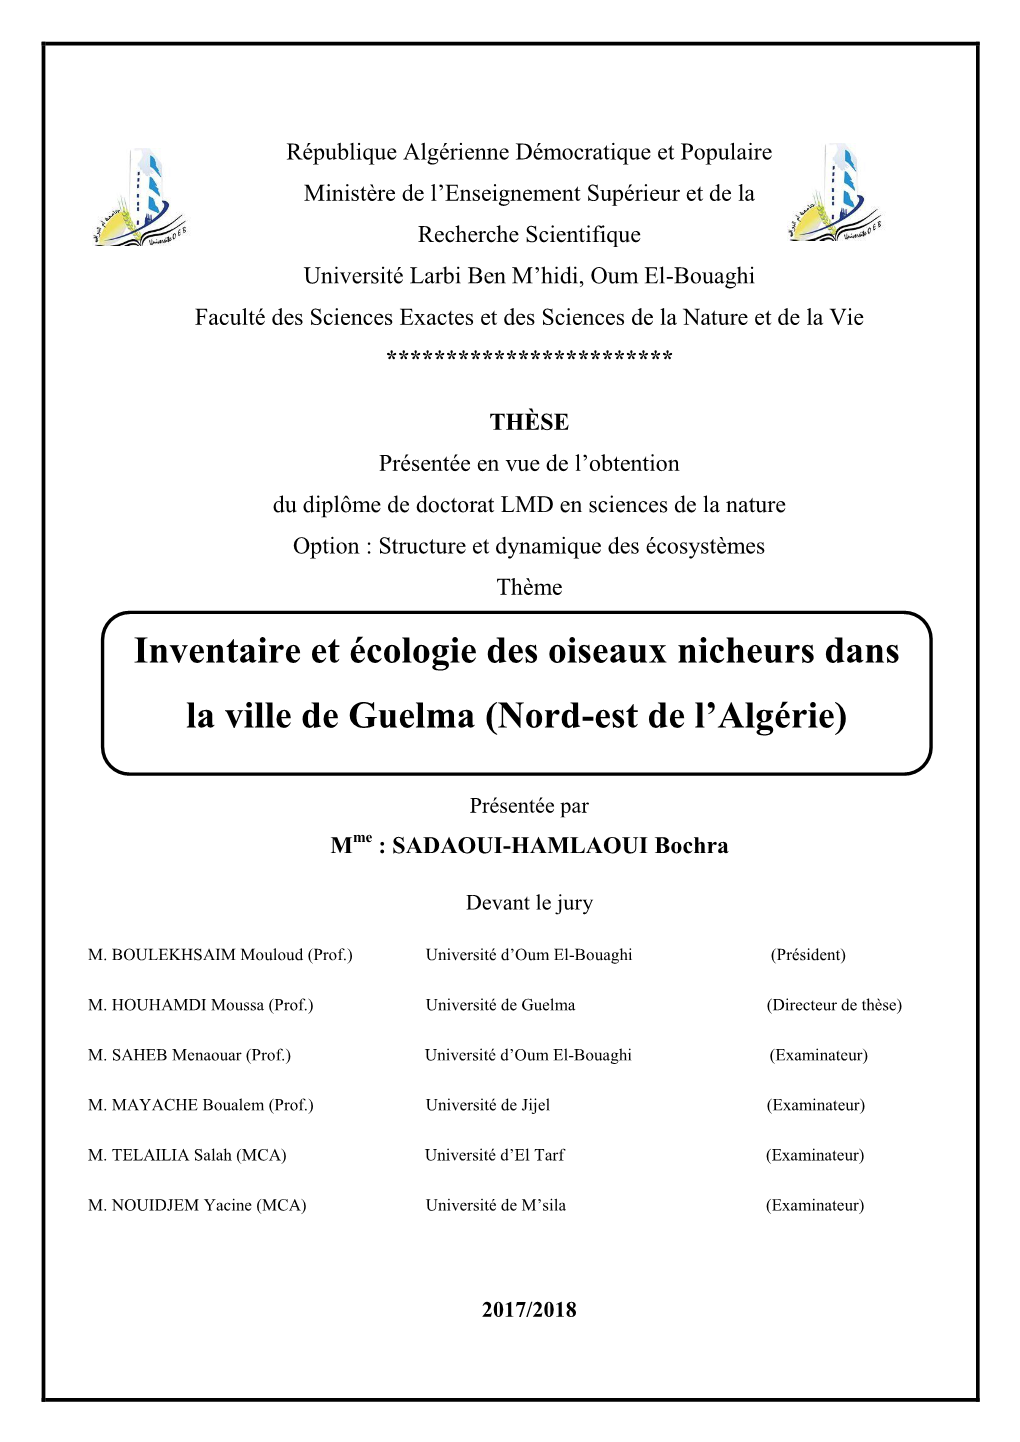 Inventaire Et Écologie Des Oiseaux Nicheurs Dans La Ville De Guelma (Nord-Est De L’Algérie)